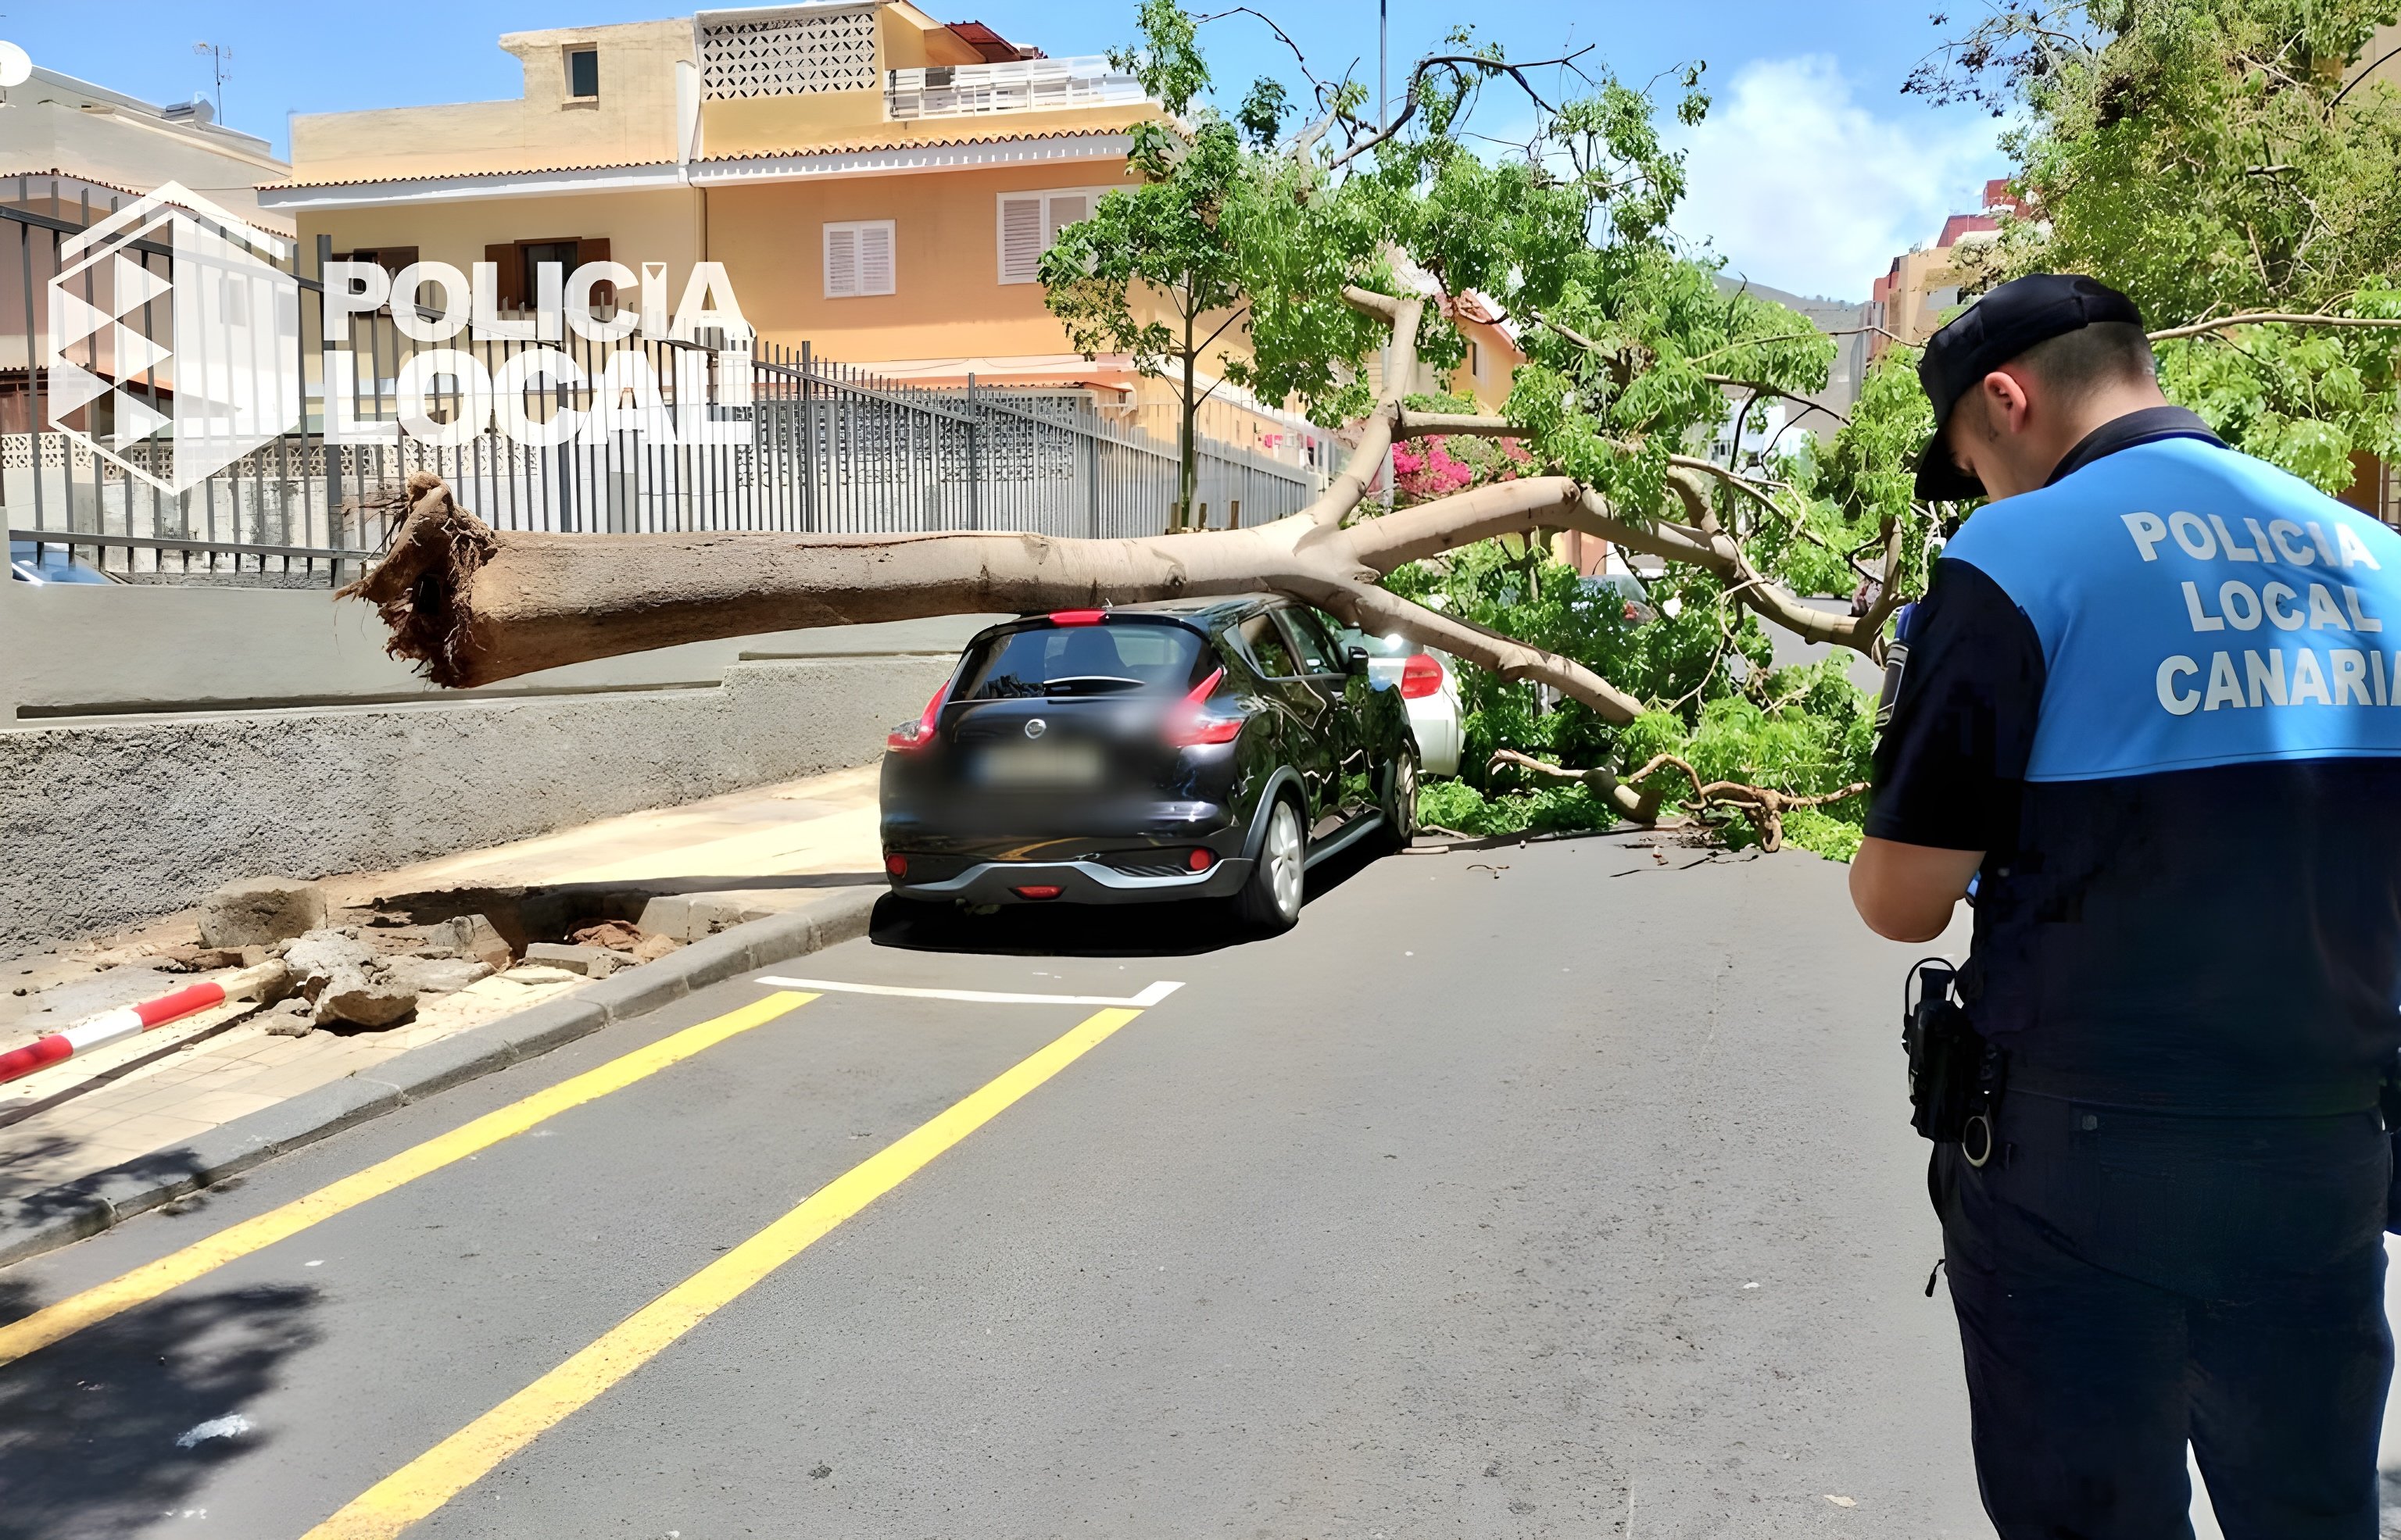 “Besorgniserregend”: In Teneriffas Hauptstadt fallen Bäume um